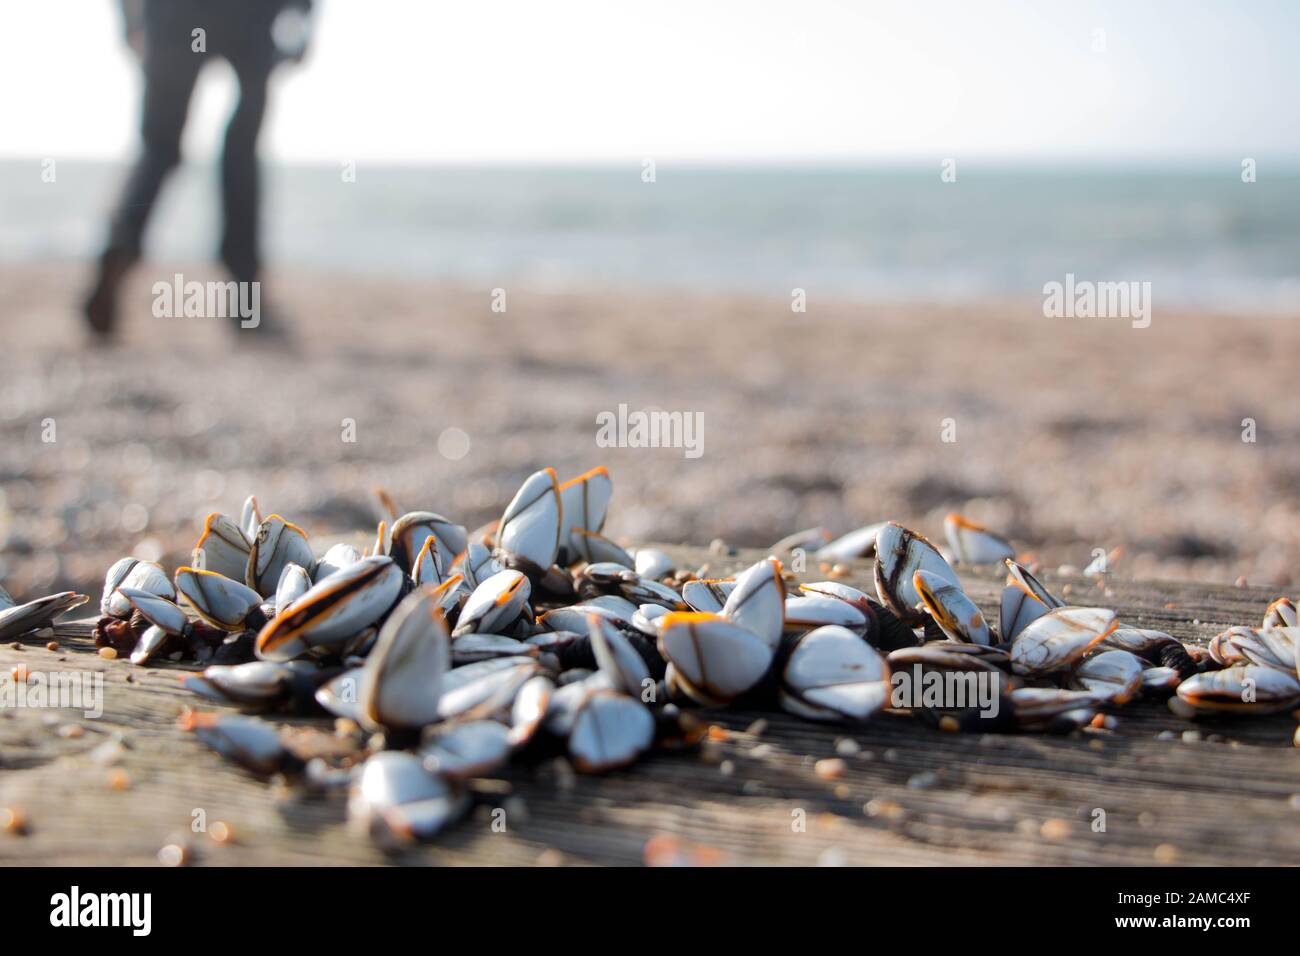 Primer plano de los barnacles de cuello de cisne en madera a la deriva en playa de guijarros con figura caminando en el fondo Foto de stock